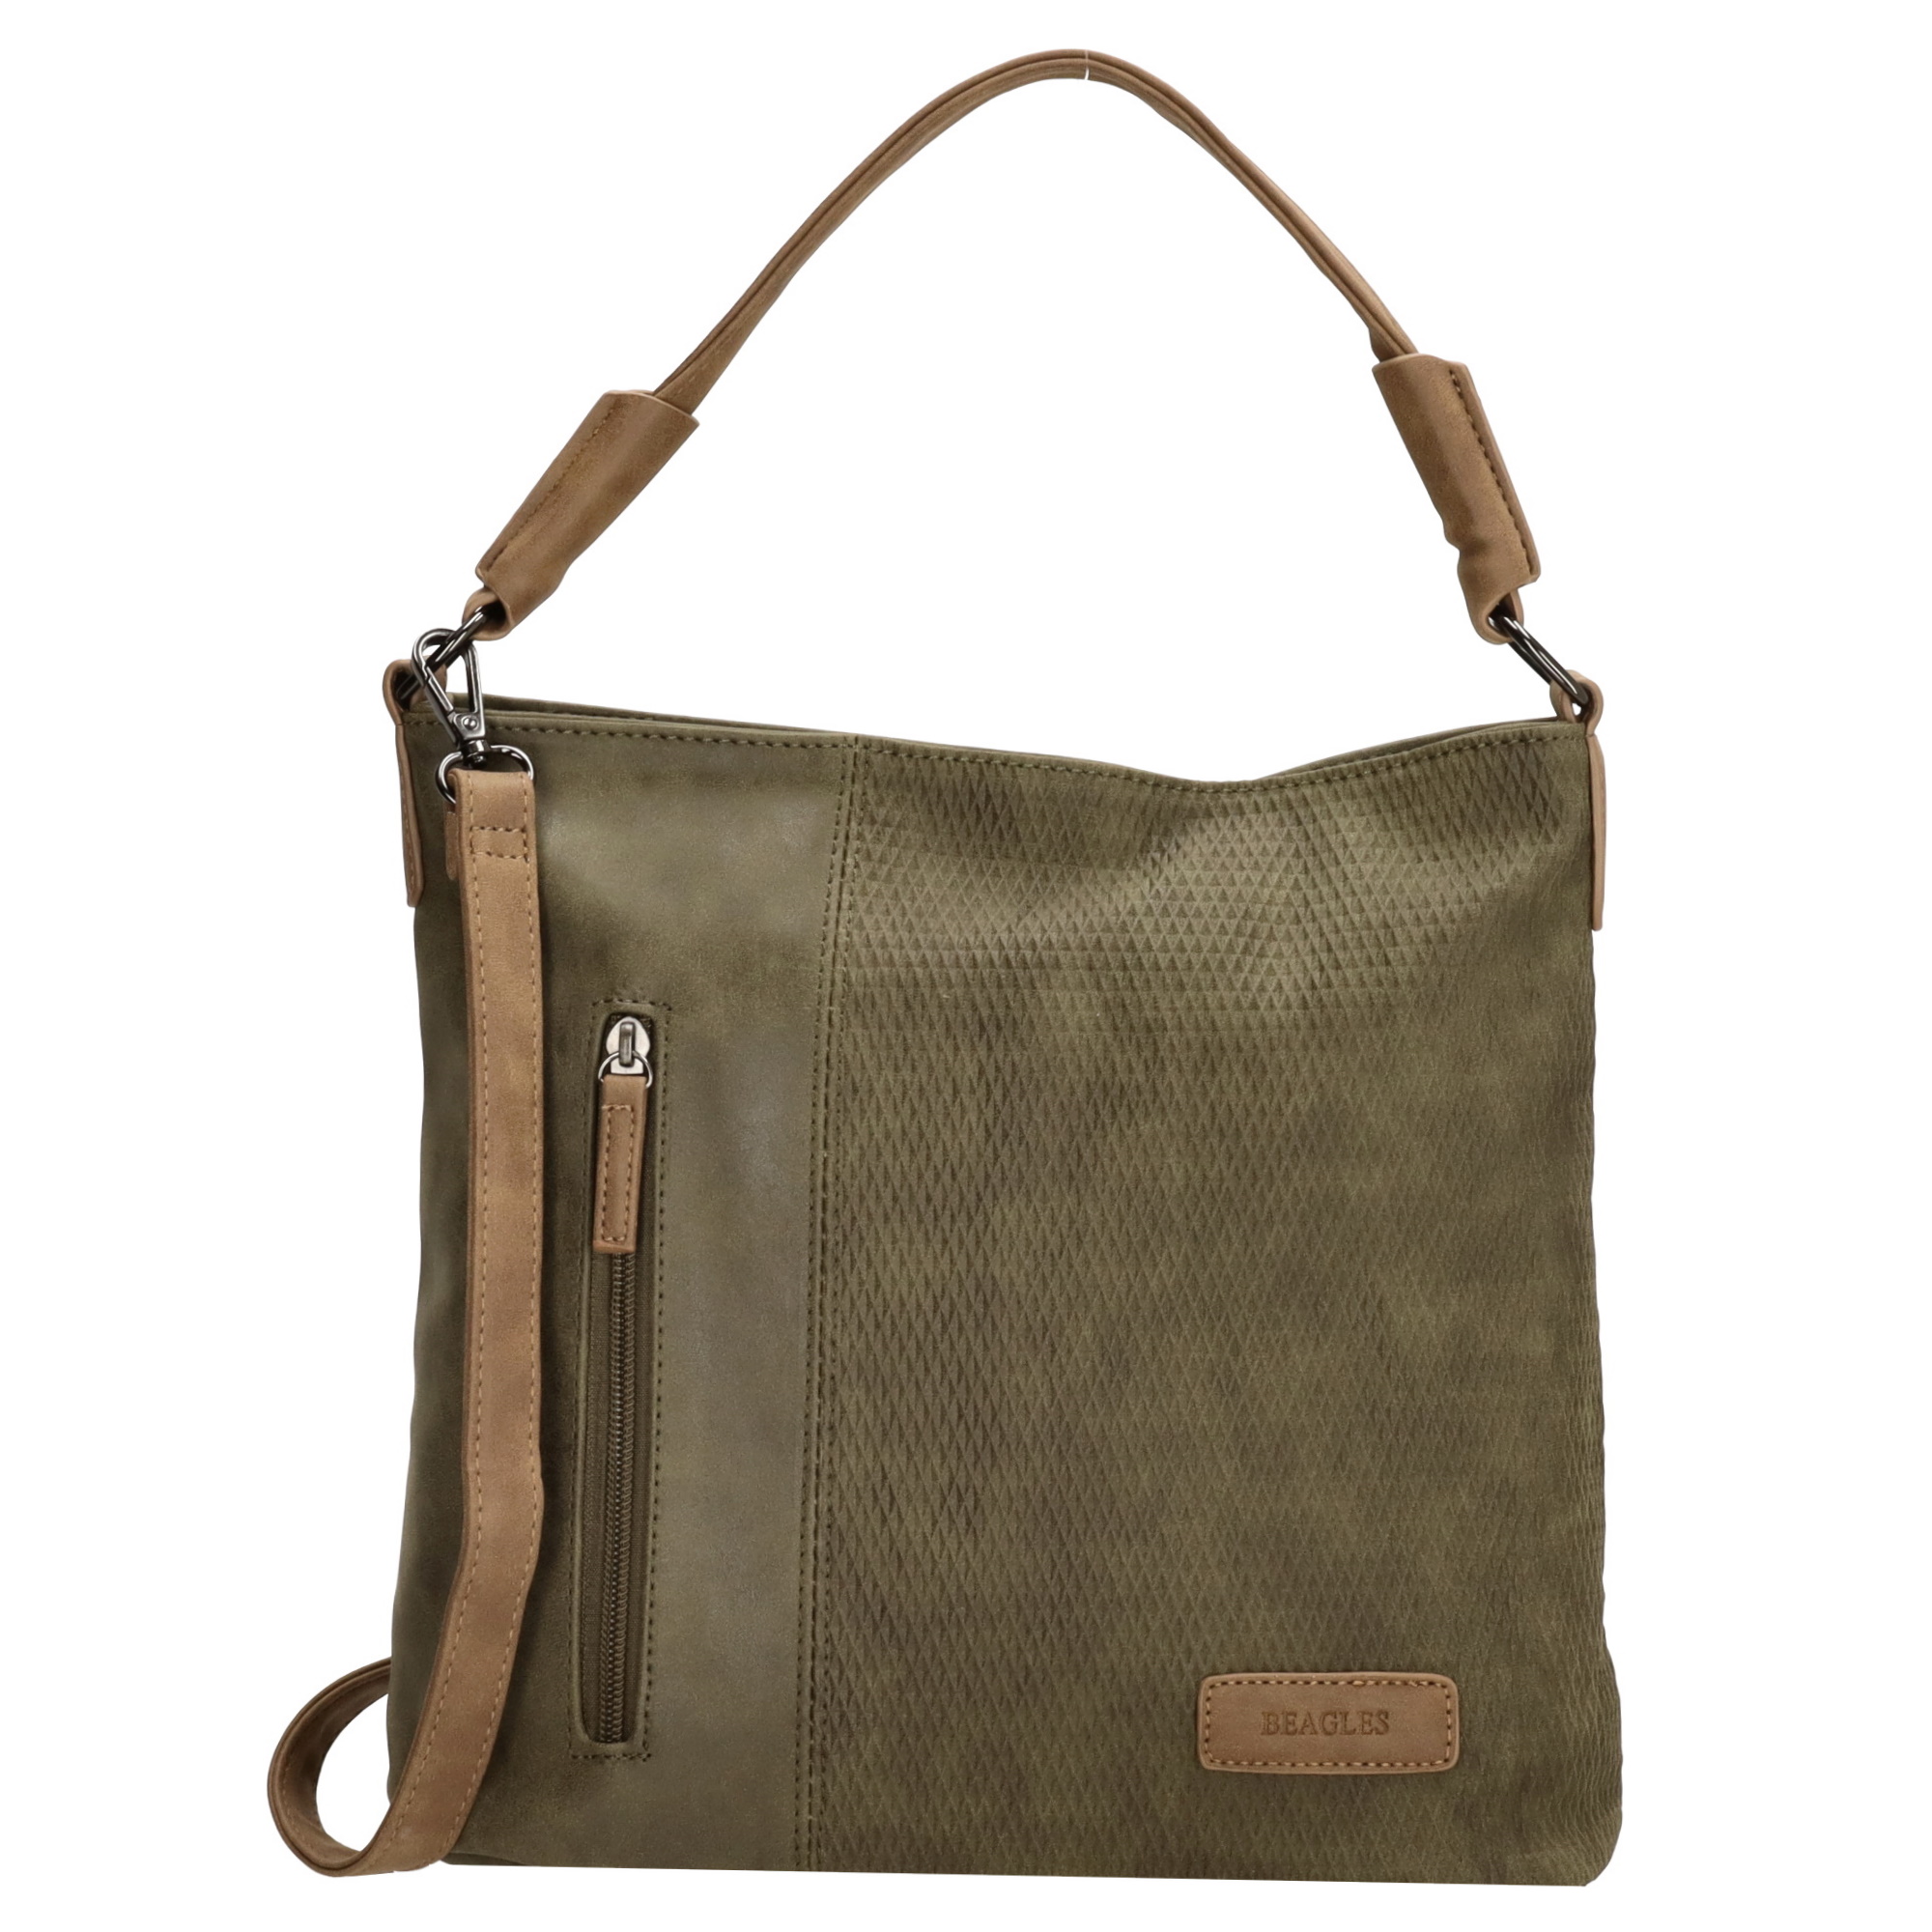 Levně Crossbody / handbag taška Beagles Brunete - olivová